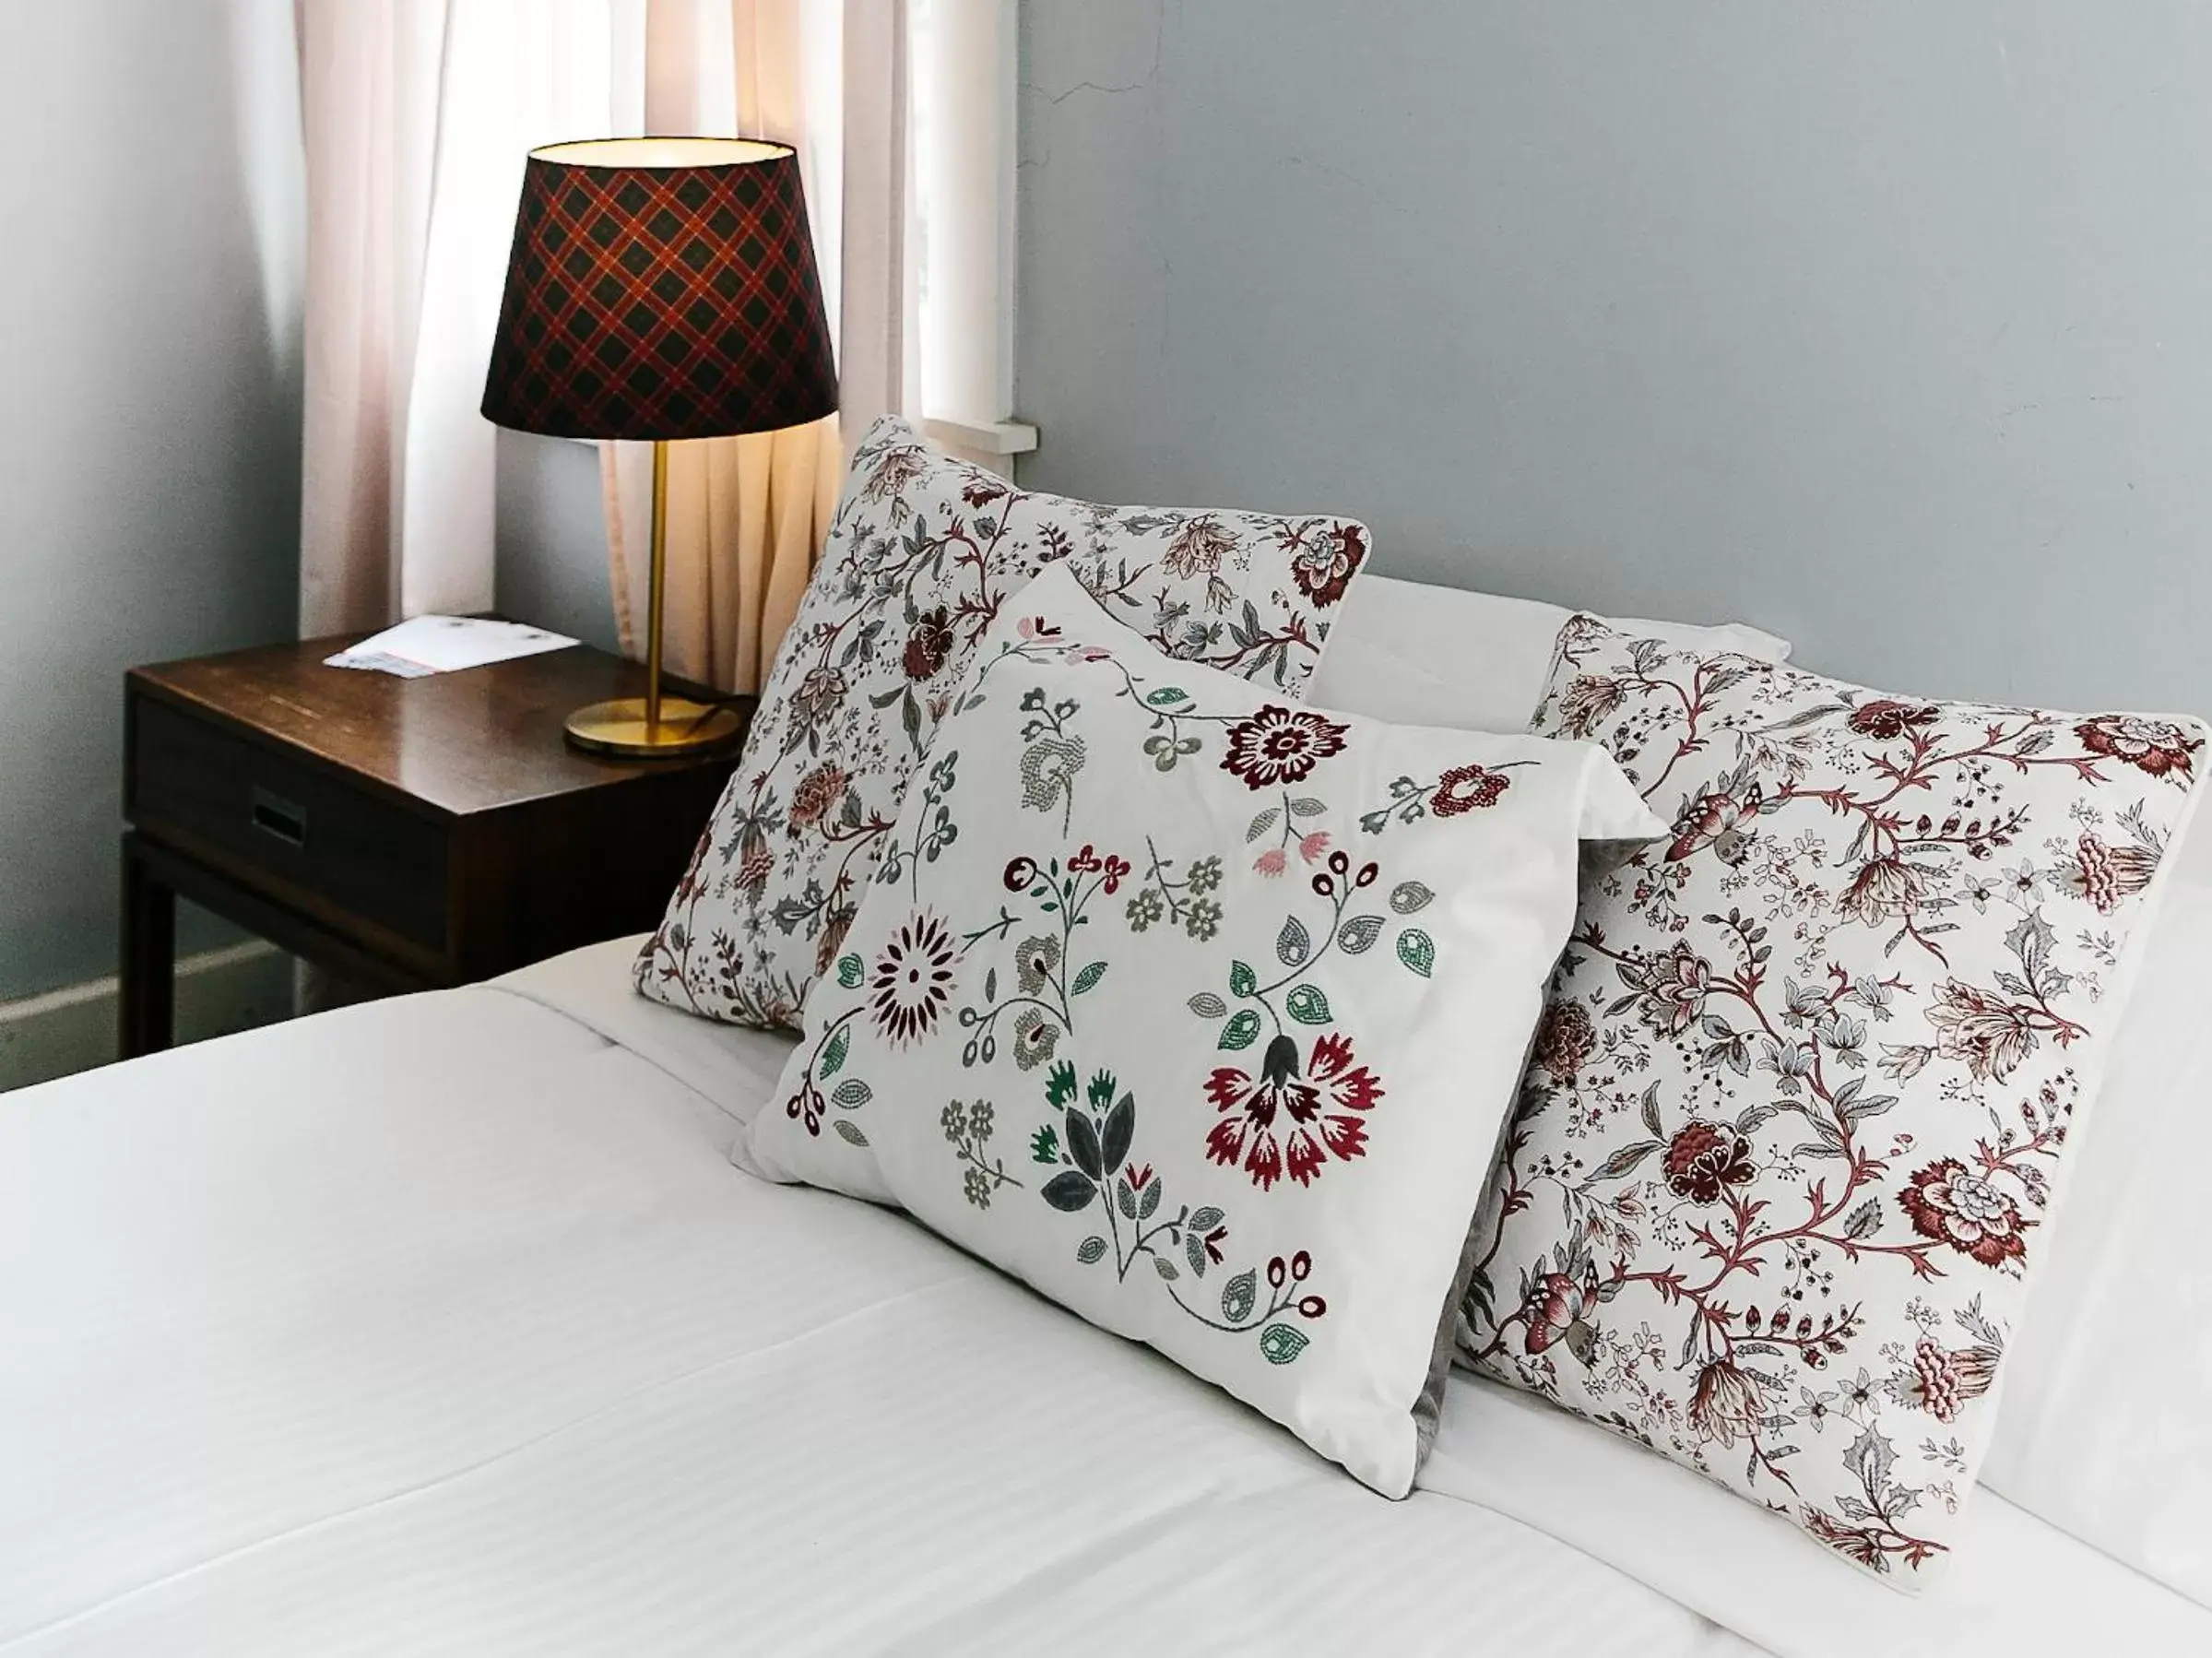 Bed in Bundanoon Hotel